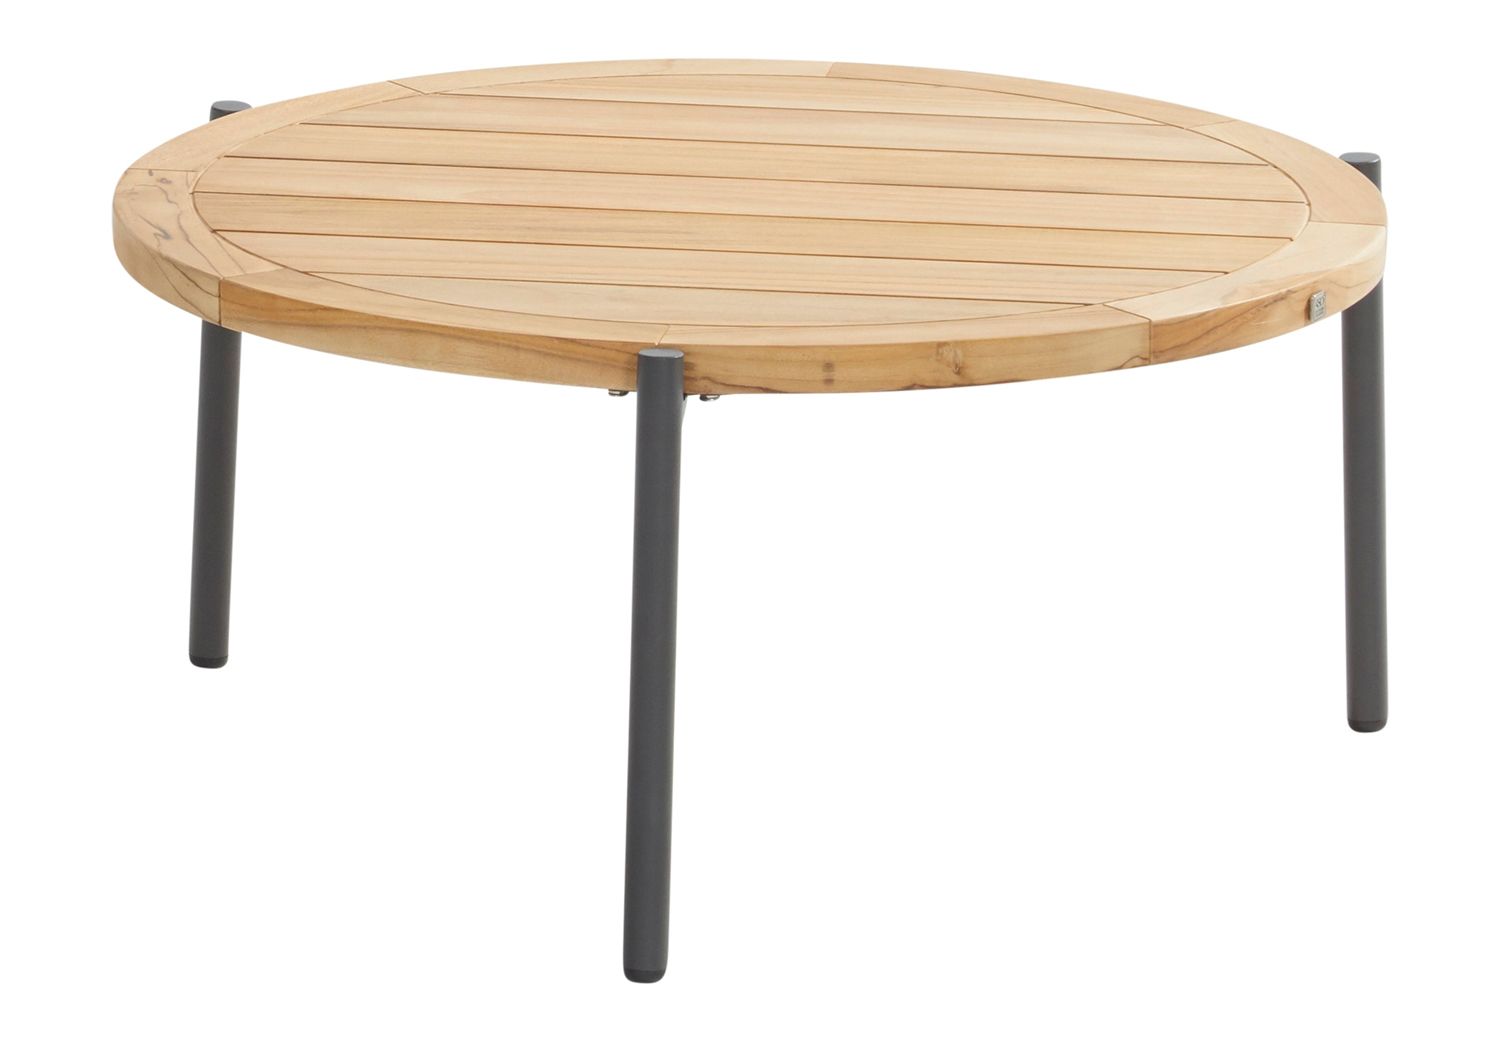 4Seasons Outdoor designové zahradní konferenční stoly Yoga Coffee Table Round (průměr 73 cm) - DESIGNPROPAGANDA